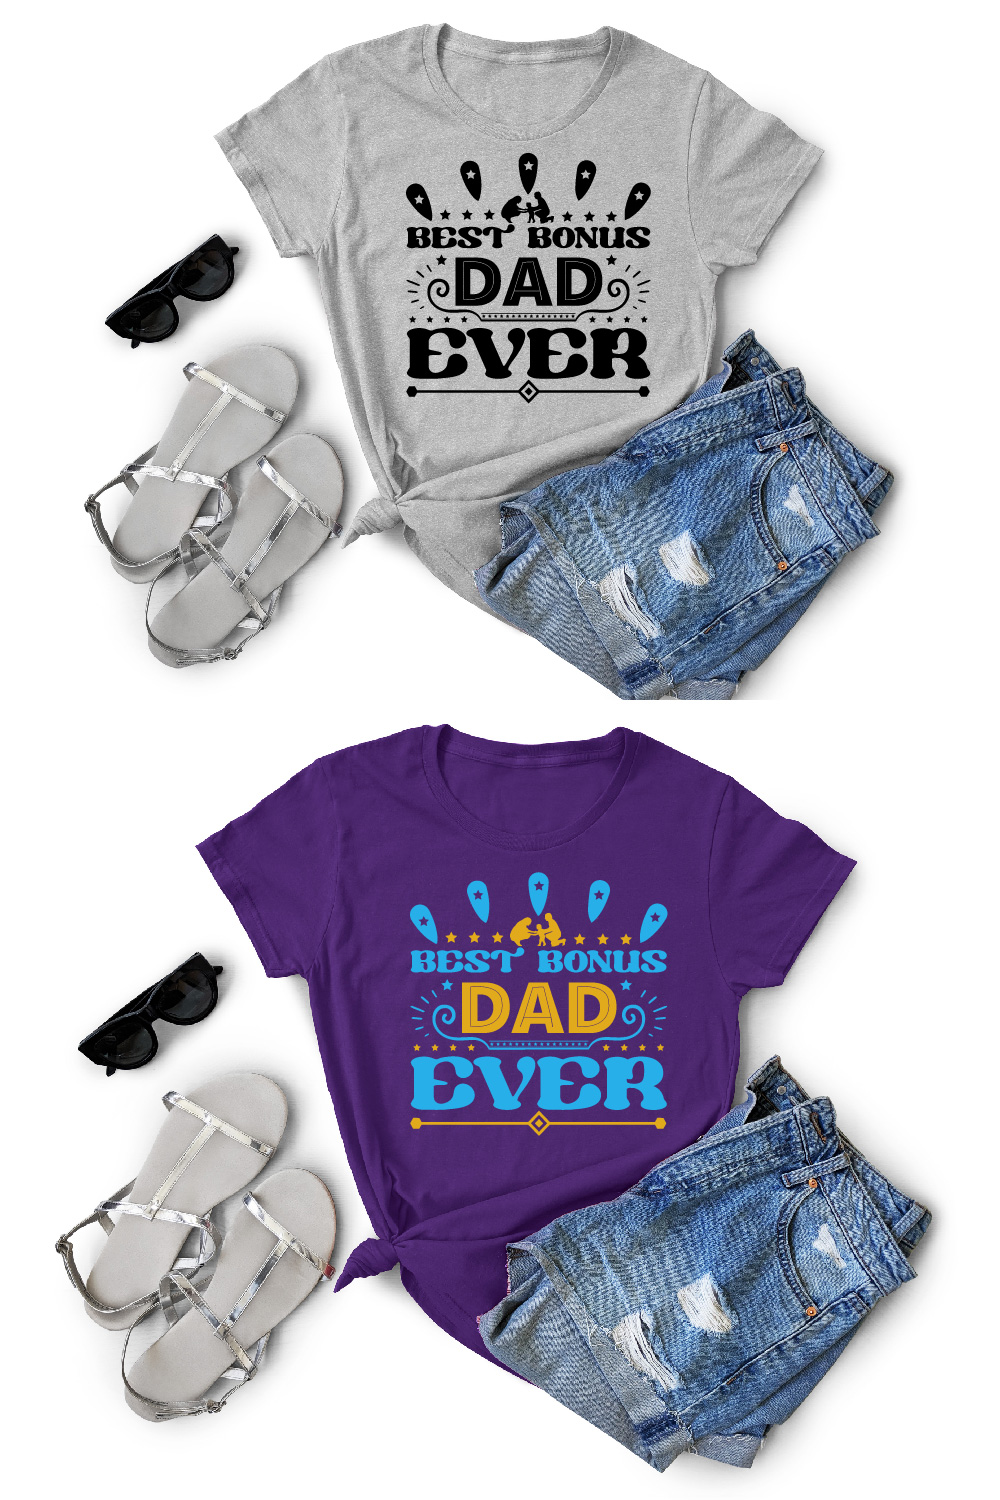 Best Bonus Dad Ever T-Shirt Cut File pinterest preview image.